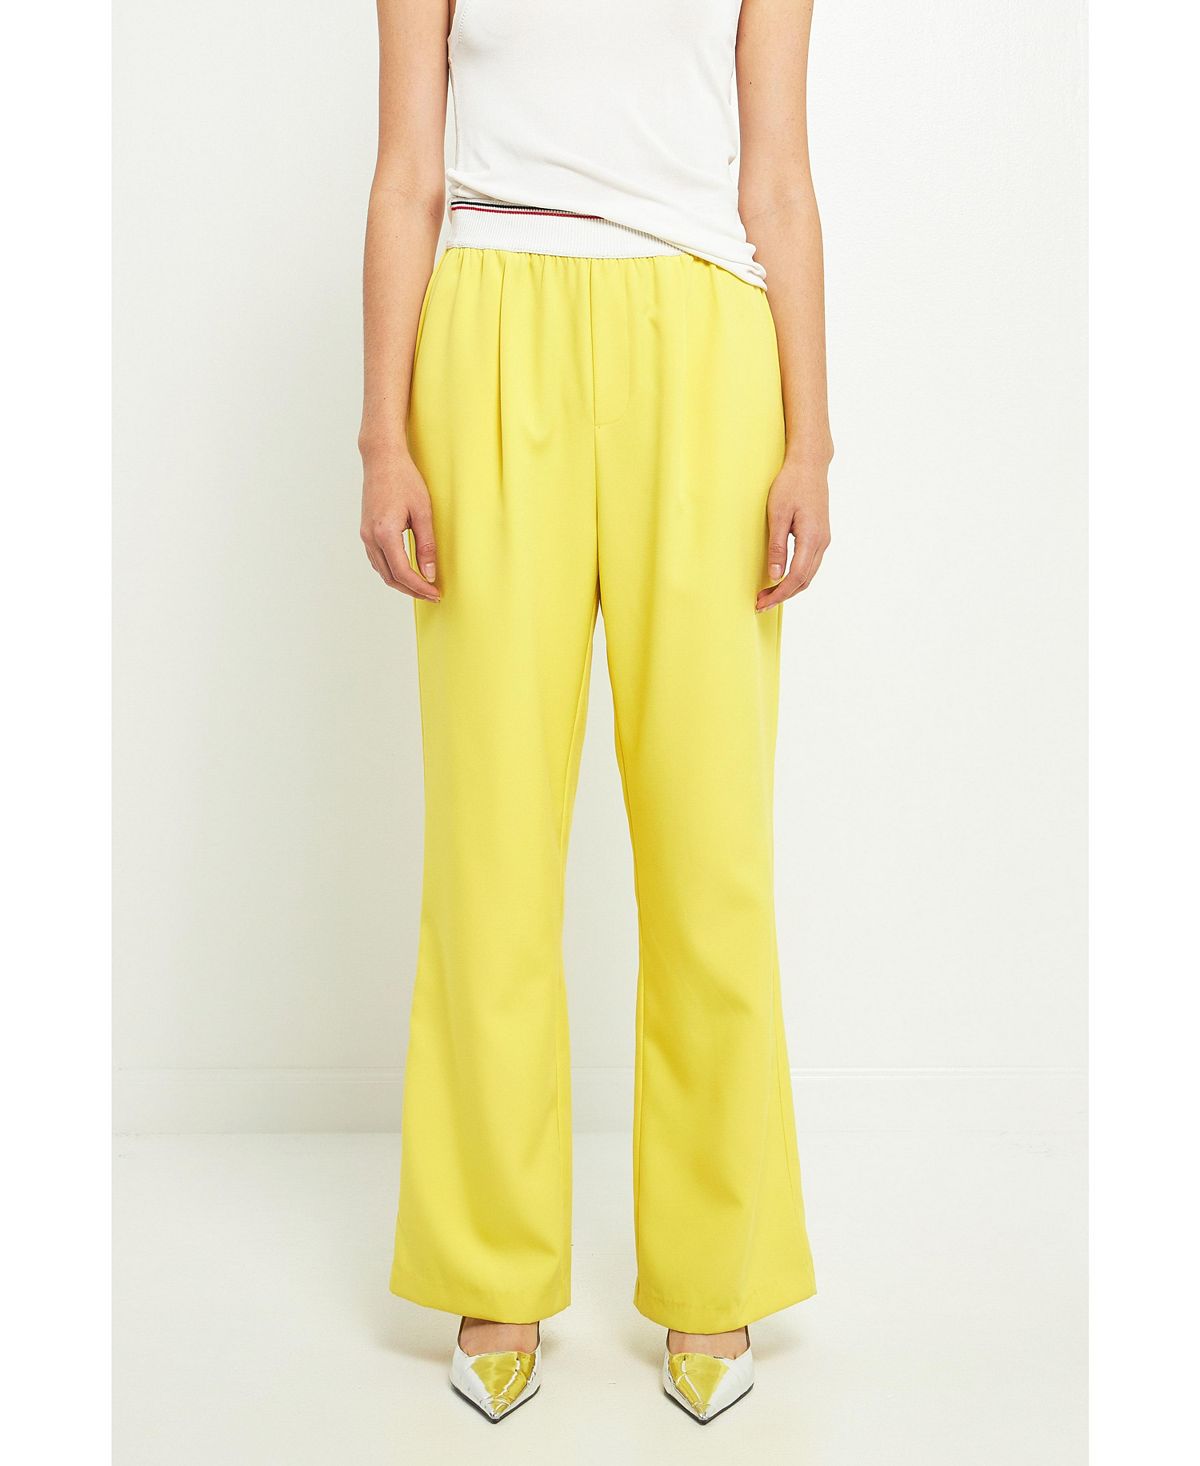 Женские широкие брюки с эластичной отделкой Grey Lab, желтый cyberpunk yellow grey